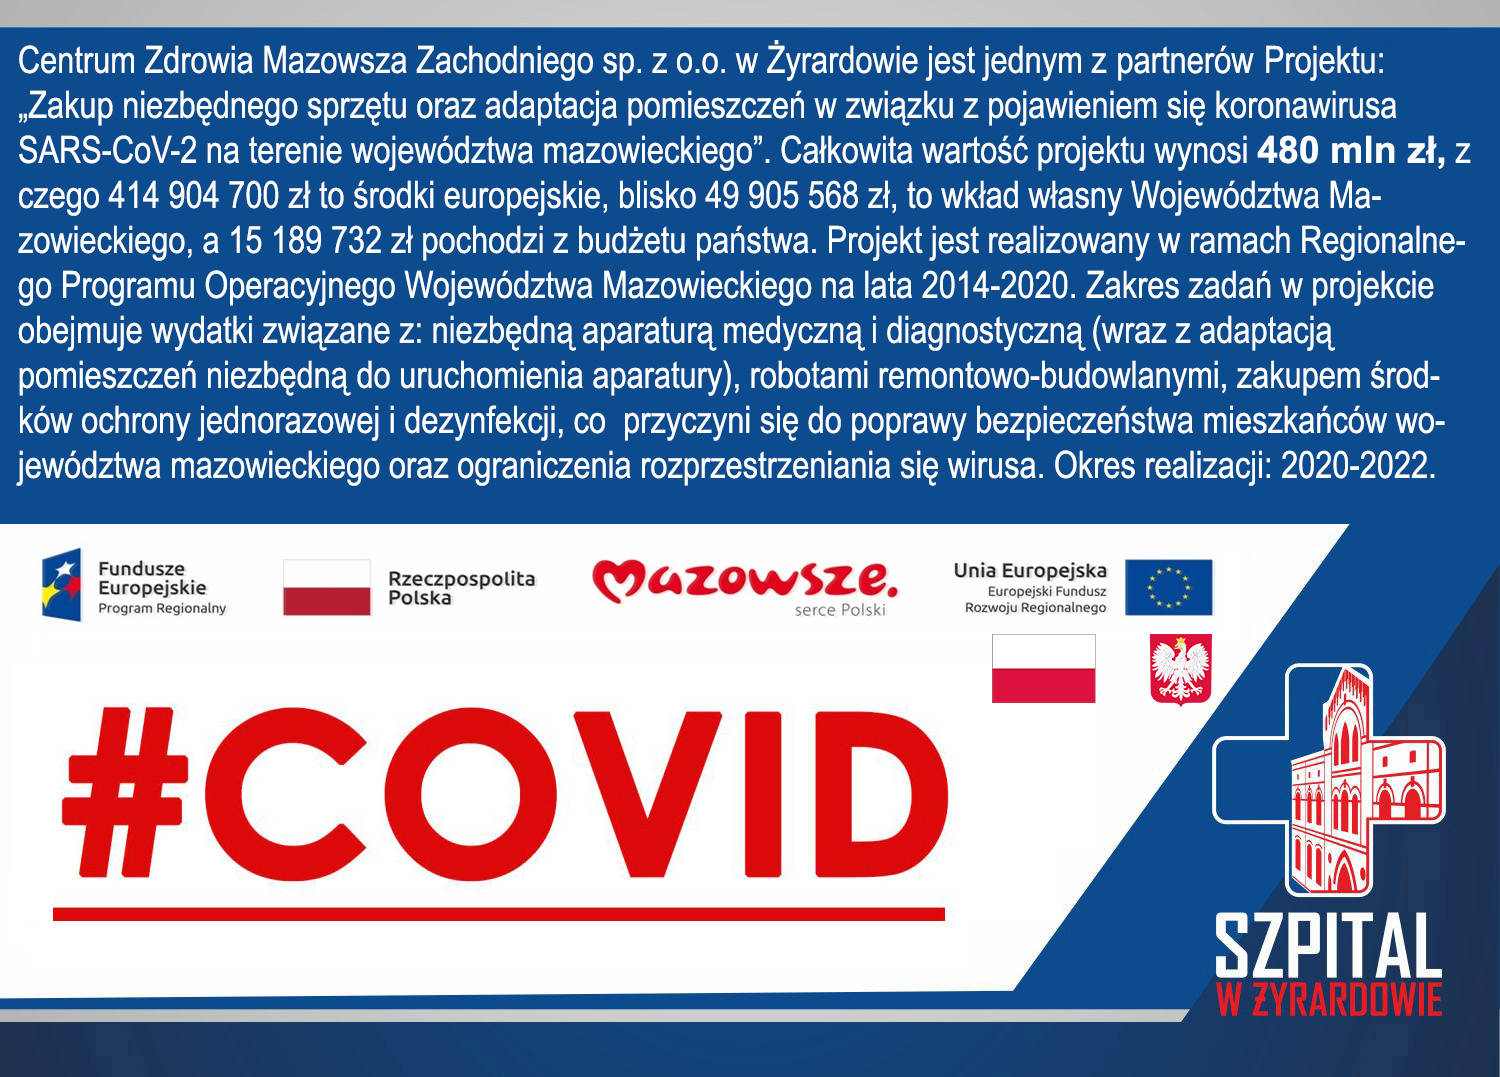 CZMZ partnerem projektu „Zakup niezbędnego sprzętu oraz adaptacja pomieszczeń w związku z pojawieniem się koronawirusa SARS-CoV-2 na terenie województwa mazowieckiego” .